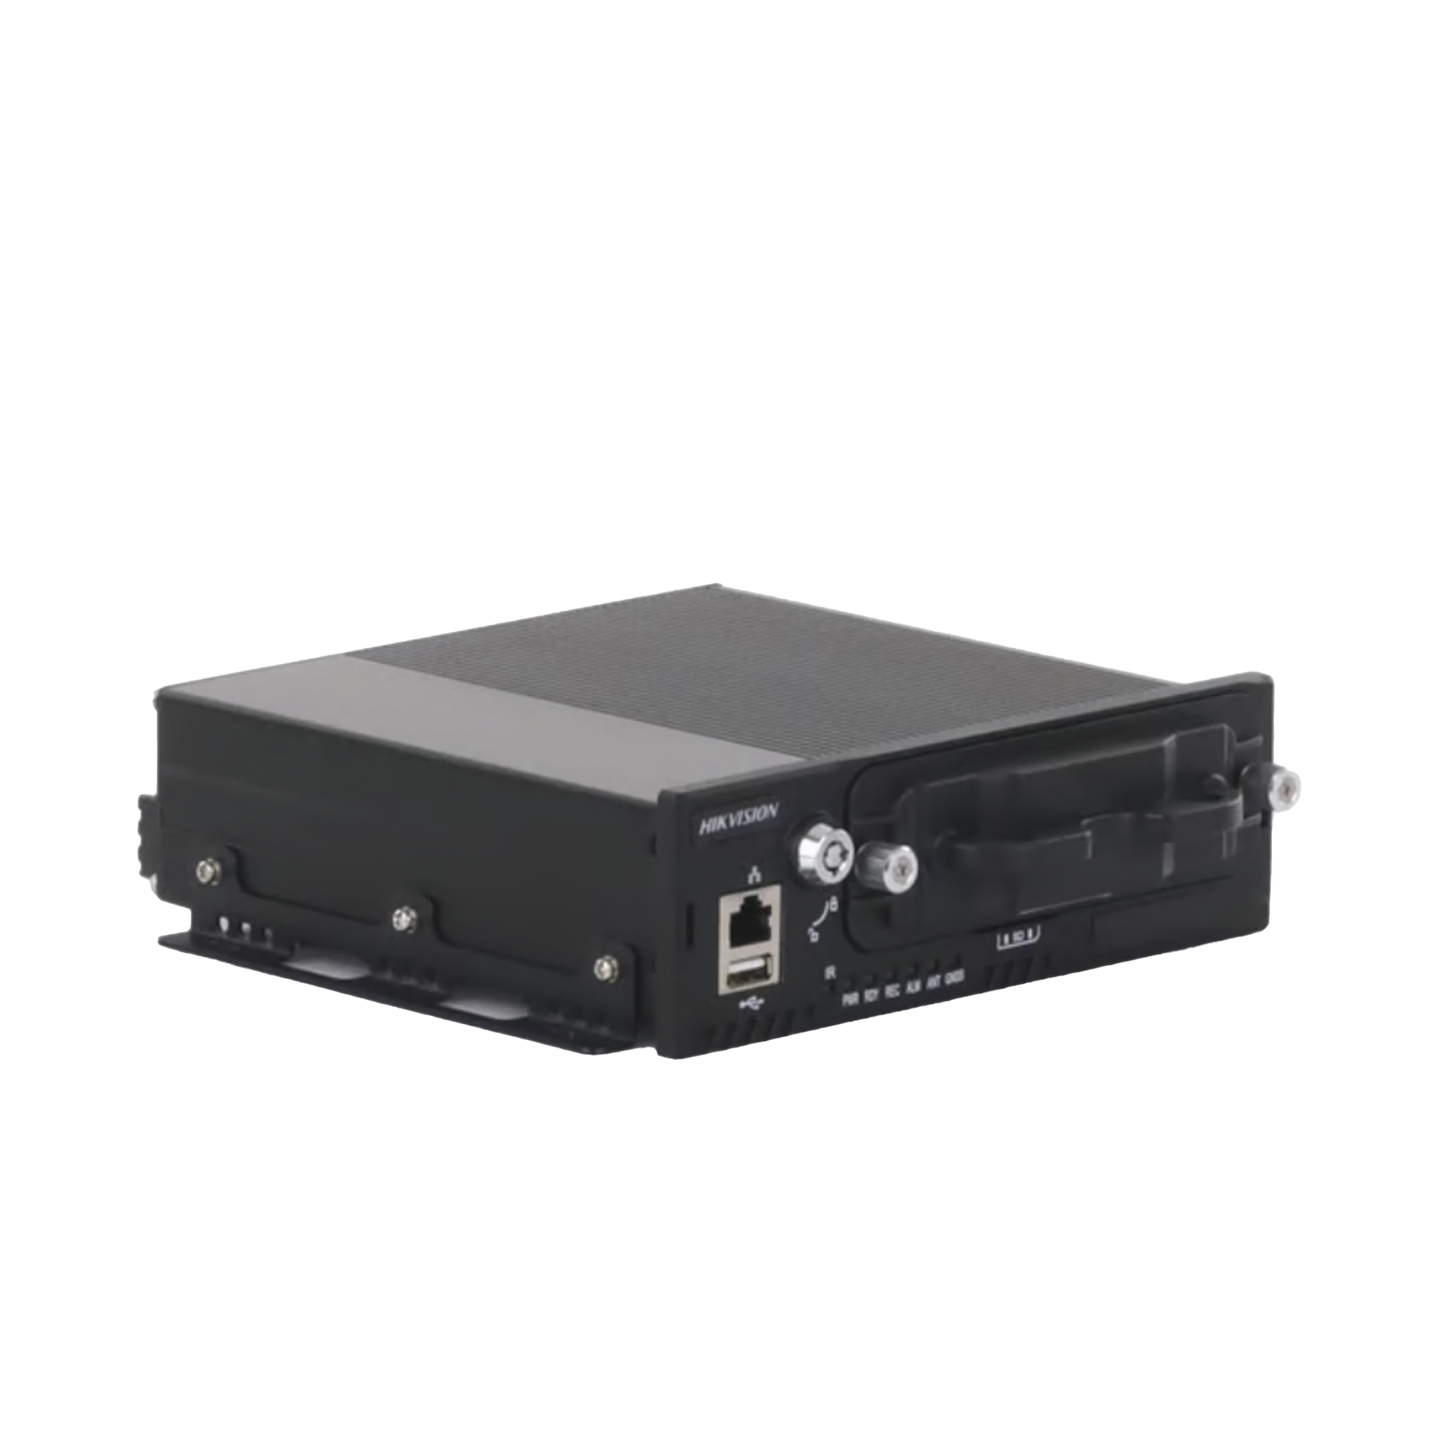 DVR Móvil 1080p (2 Megapixel) / 4 Canales TURBO / Sensor G / Soporta 2 HDD / Alarmas I/O / Salida de Video